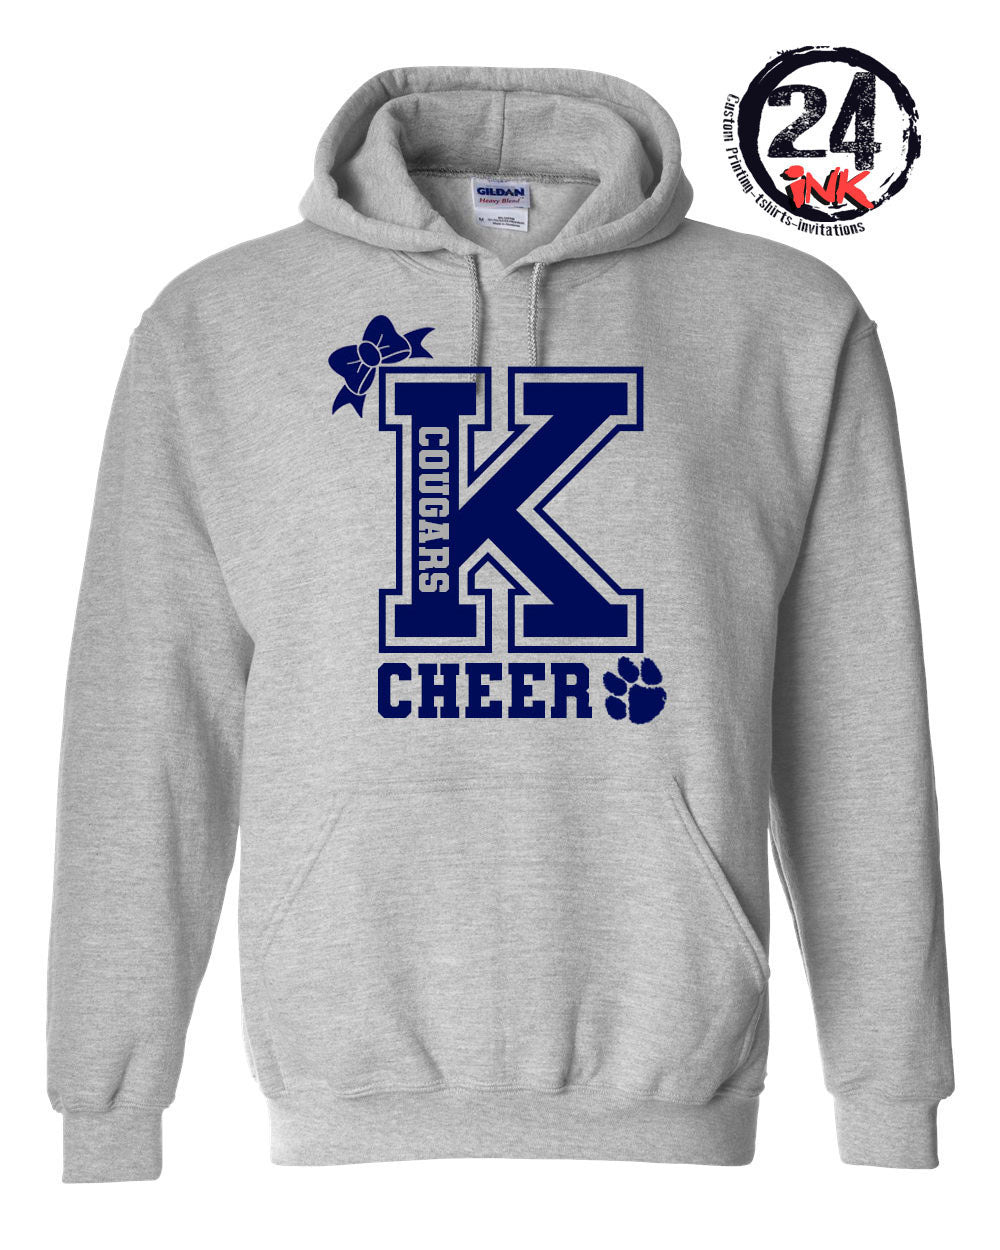 Big K Cheer Hooded Sweatshirt